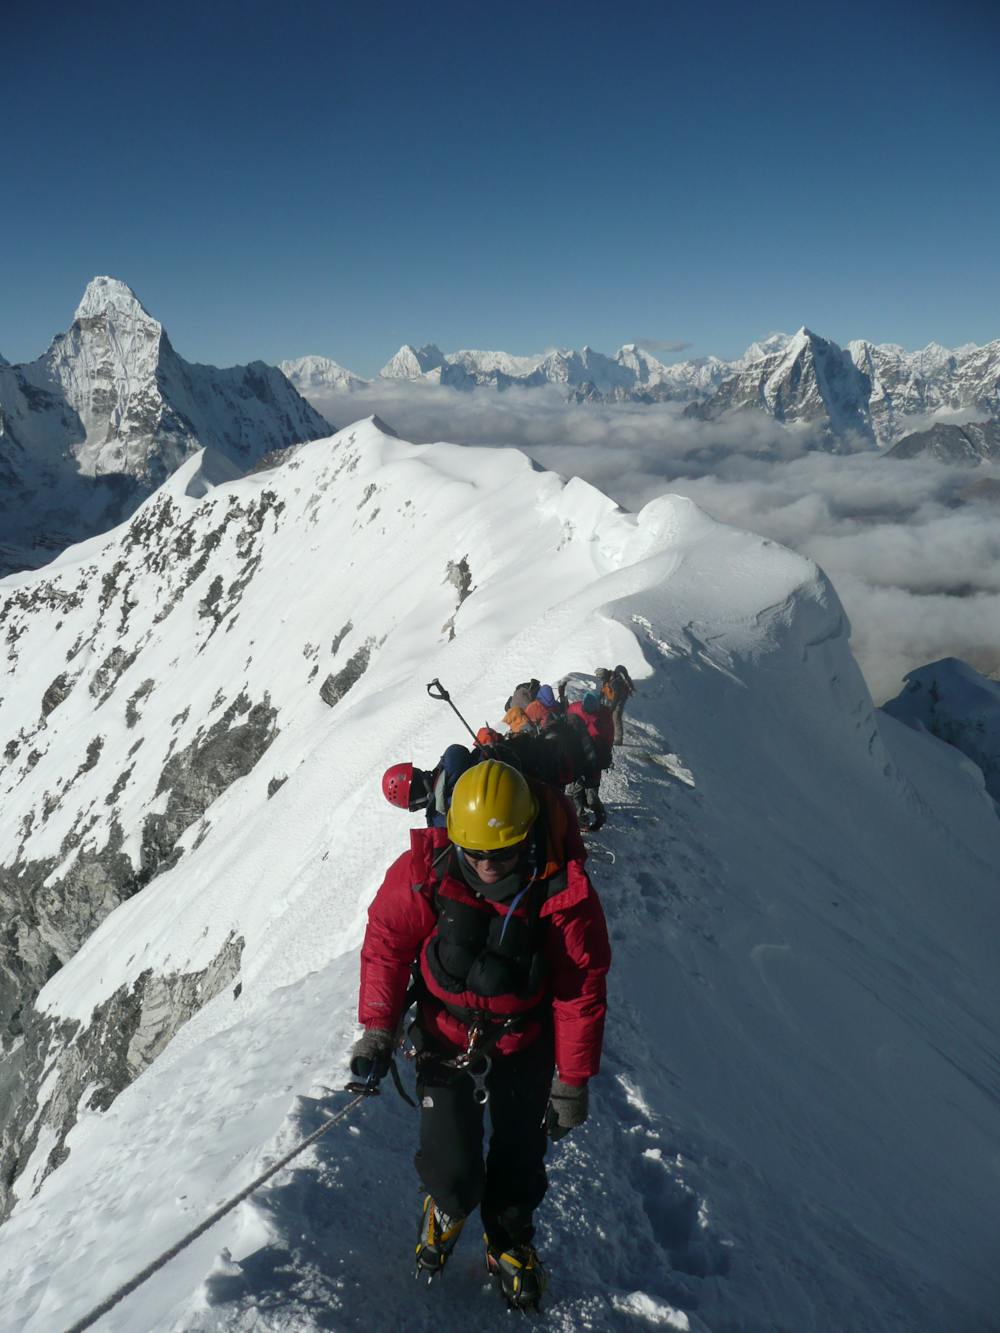 On the final summit ridge